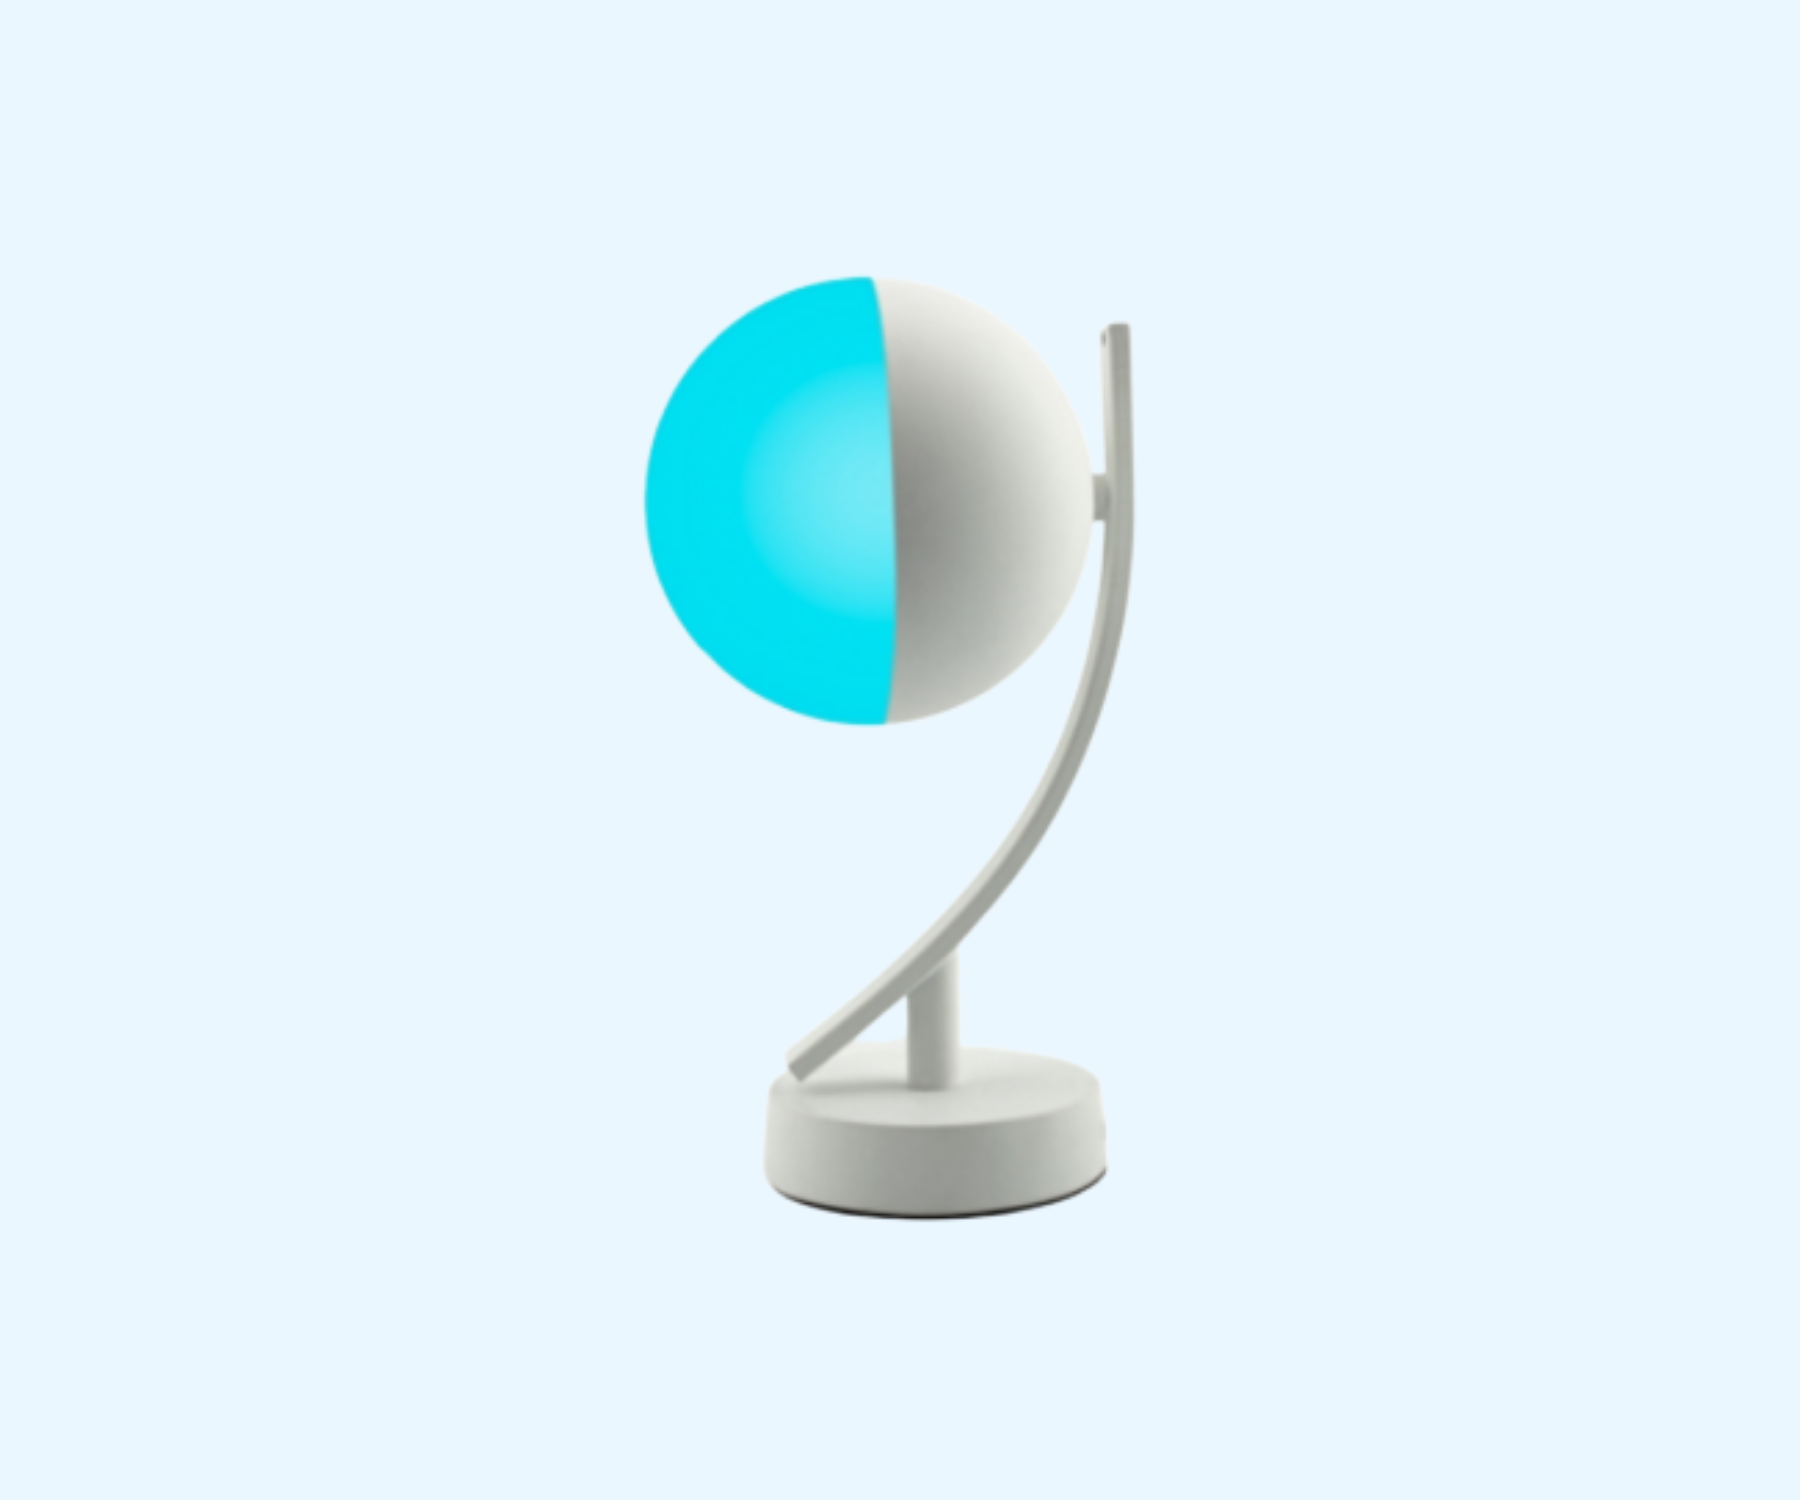 Proč si pořídit chytrou stolní lampu, chytrou LED žárovku nebo chytrý vypínač